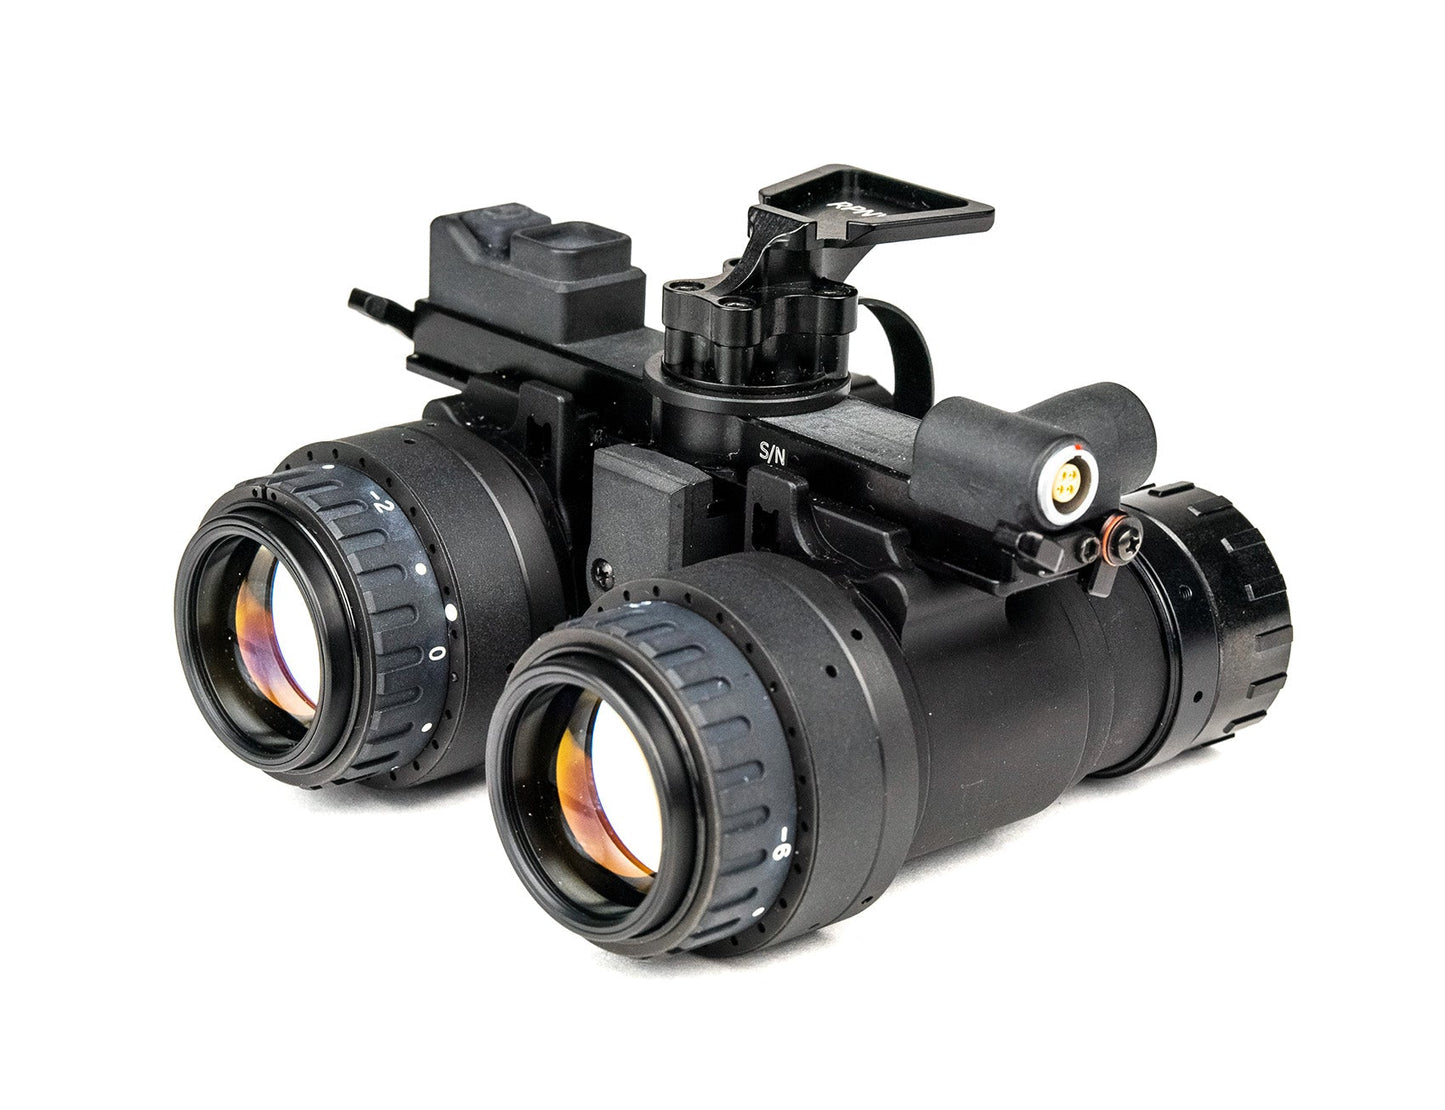 AB Night Vision RPNVG Binocular NVG